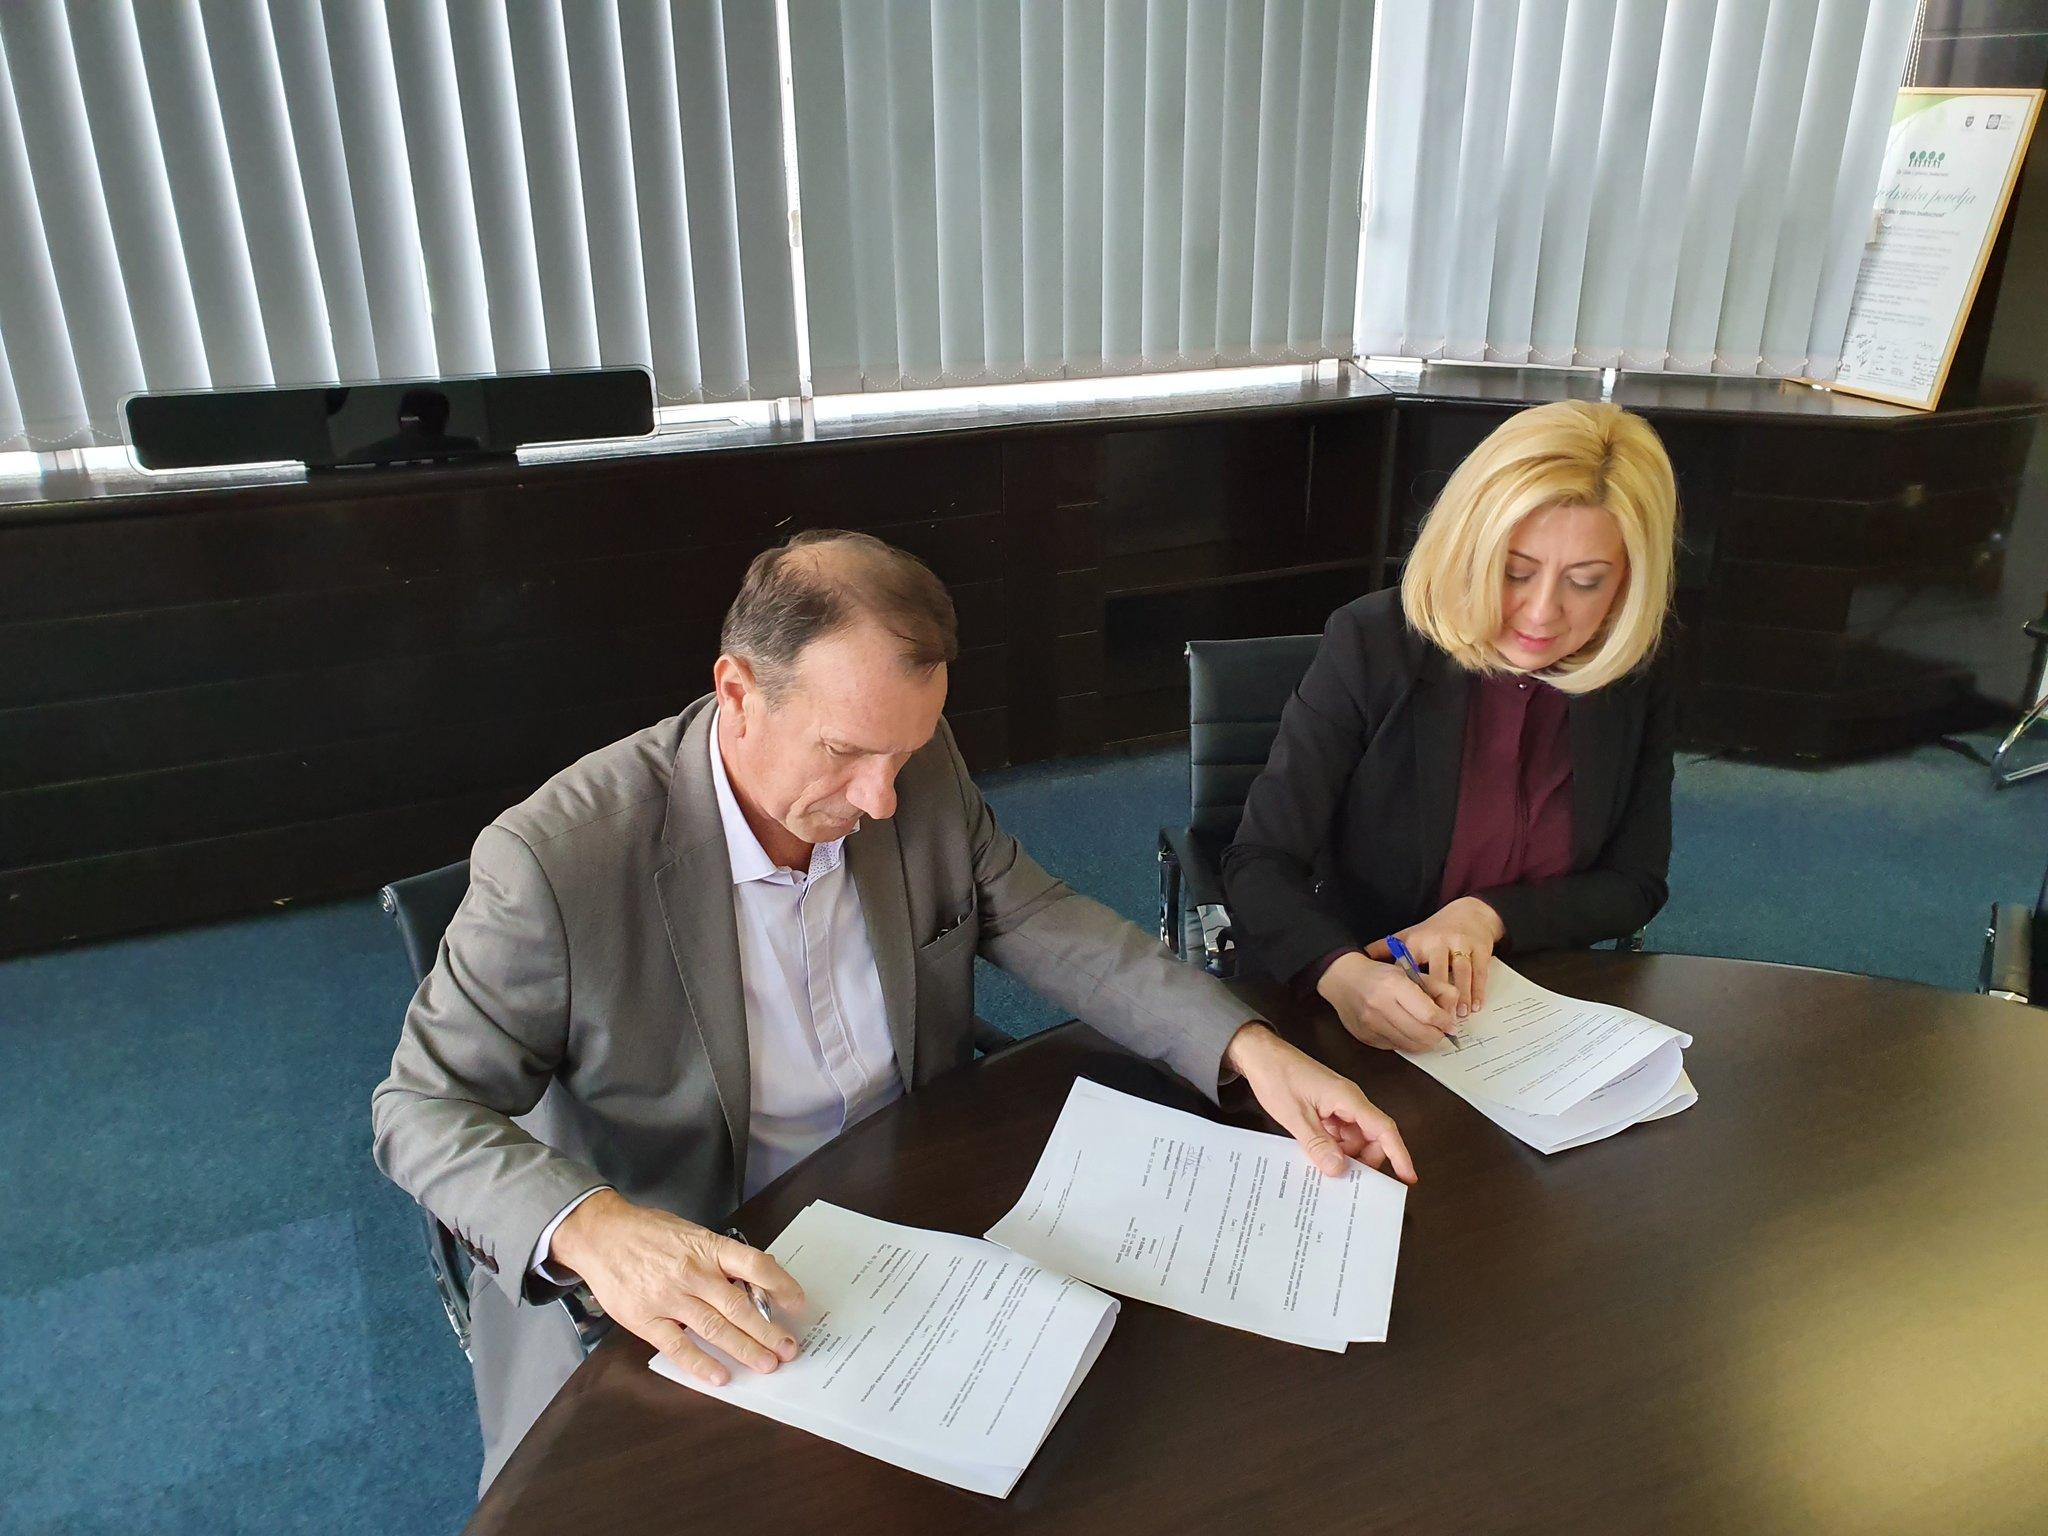 Đapo i Hafizović potpisali ugovor: Izdvojeno 100 hiljada maraka za Memorijalni centar Potočari